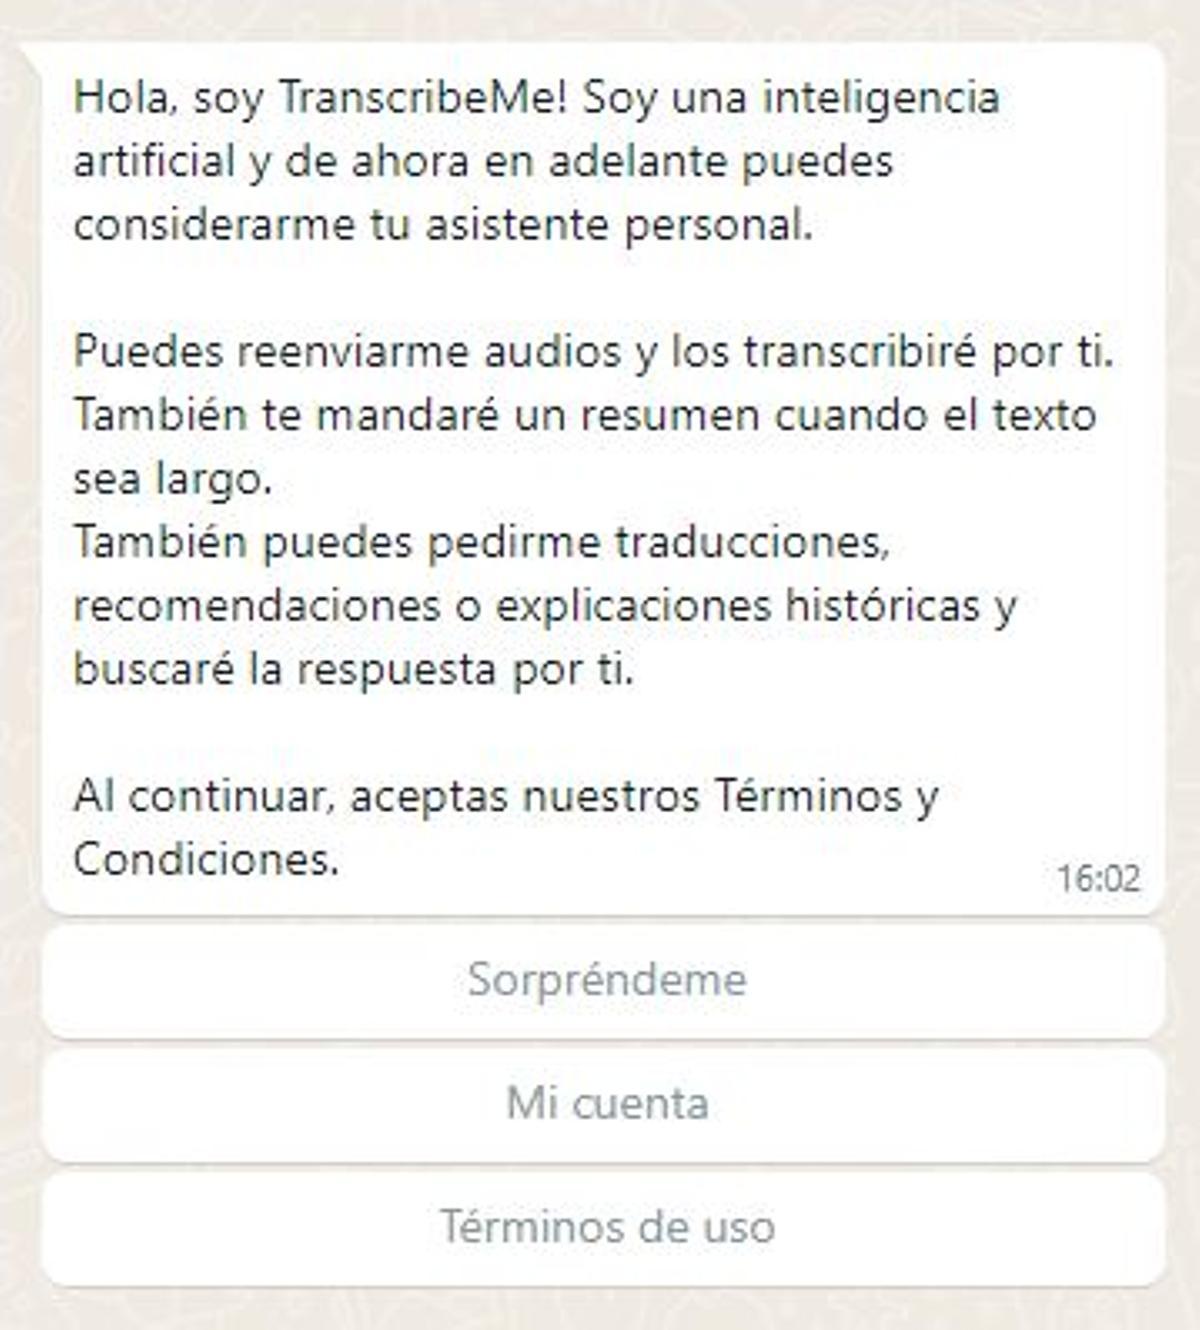 Captura del mensaje del bot 'transcribeme' al iniciar la conversación.